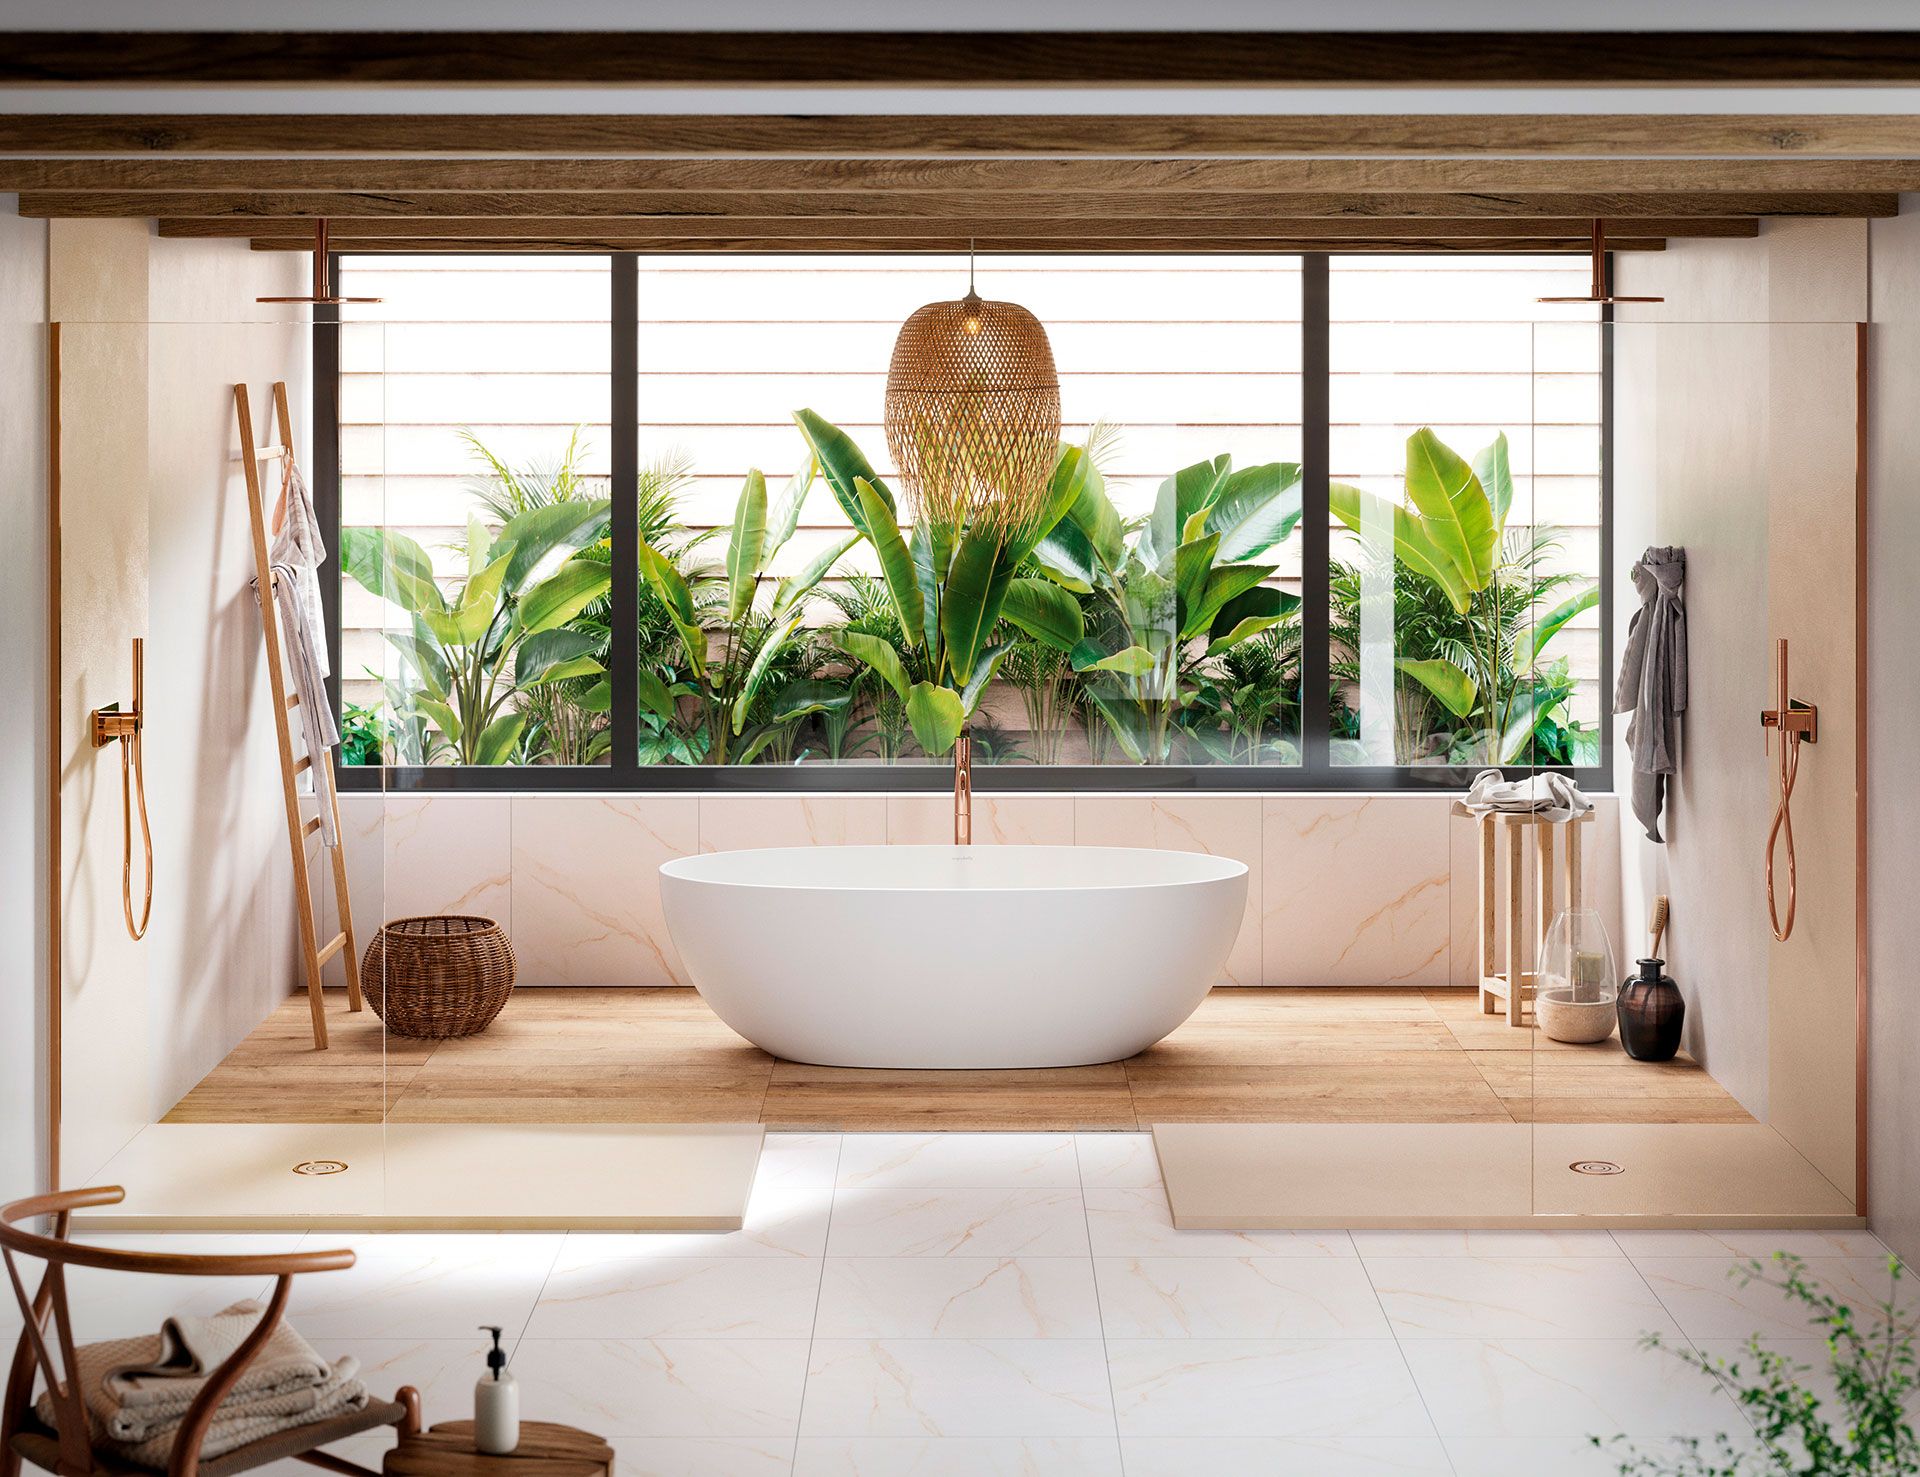 Baños decorados con madera y plantas: 14 maneras fáciles de